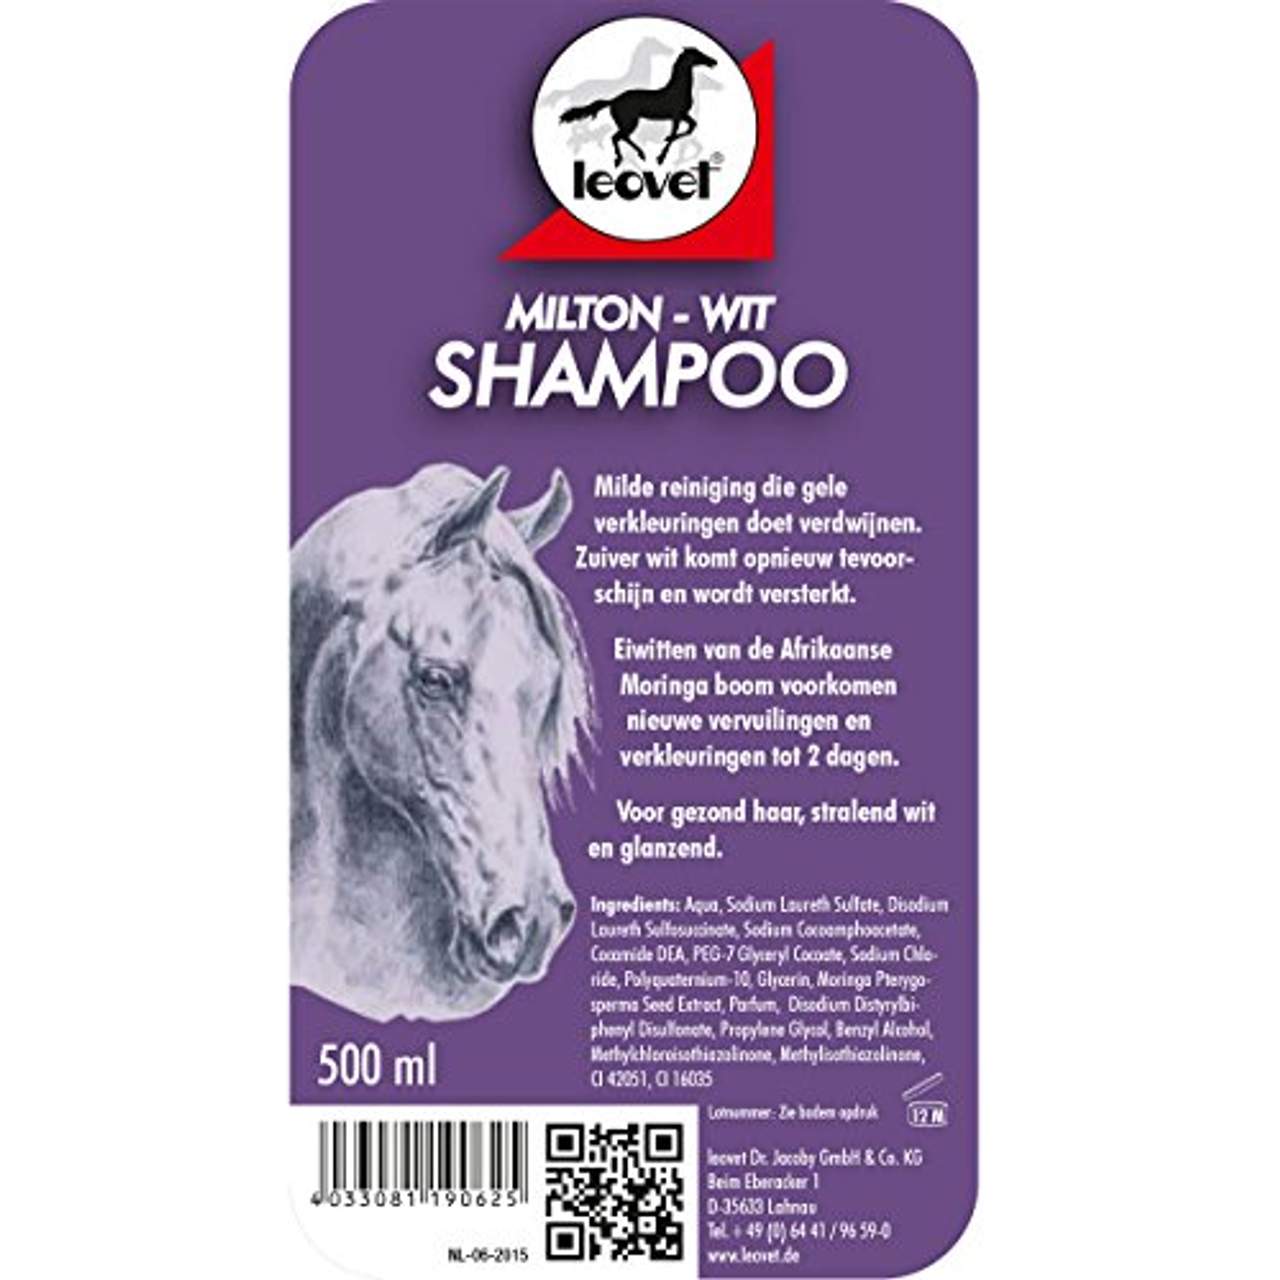 Leovet Shiny White Shampoo